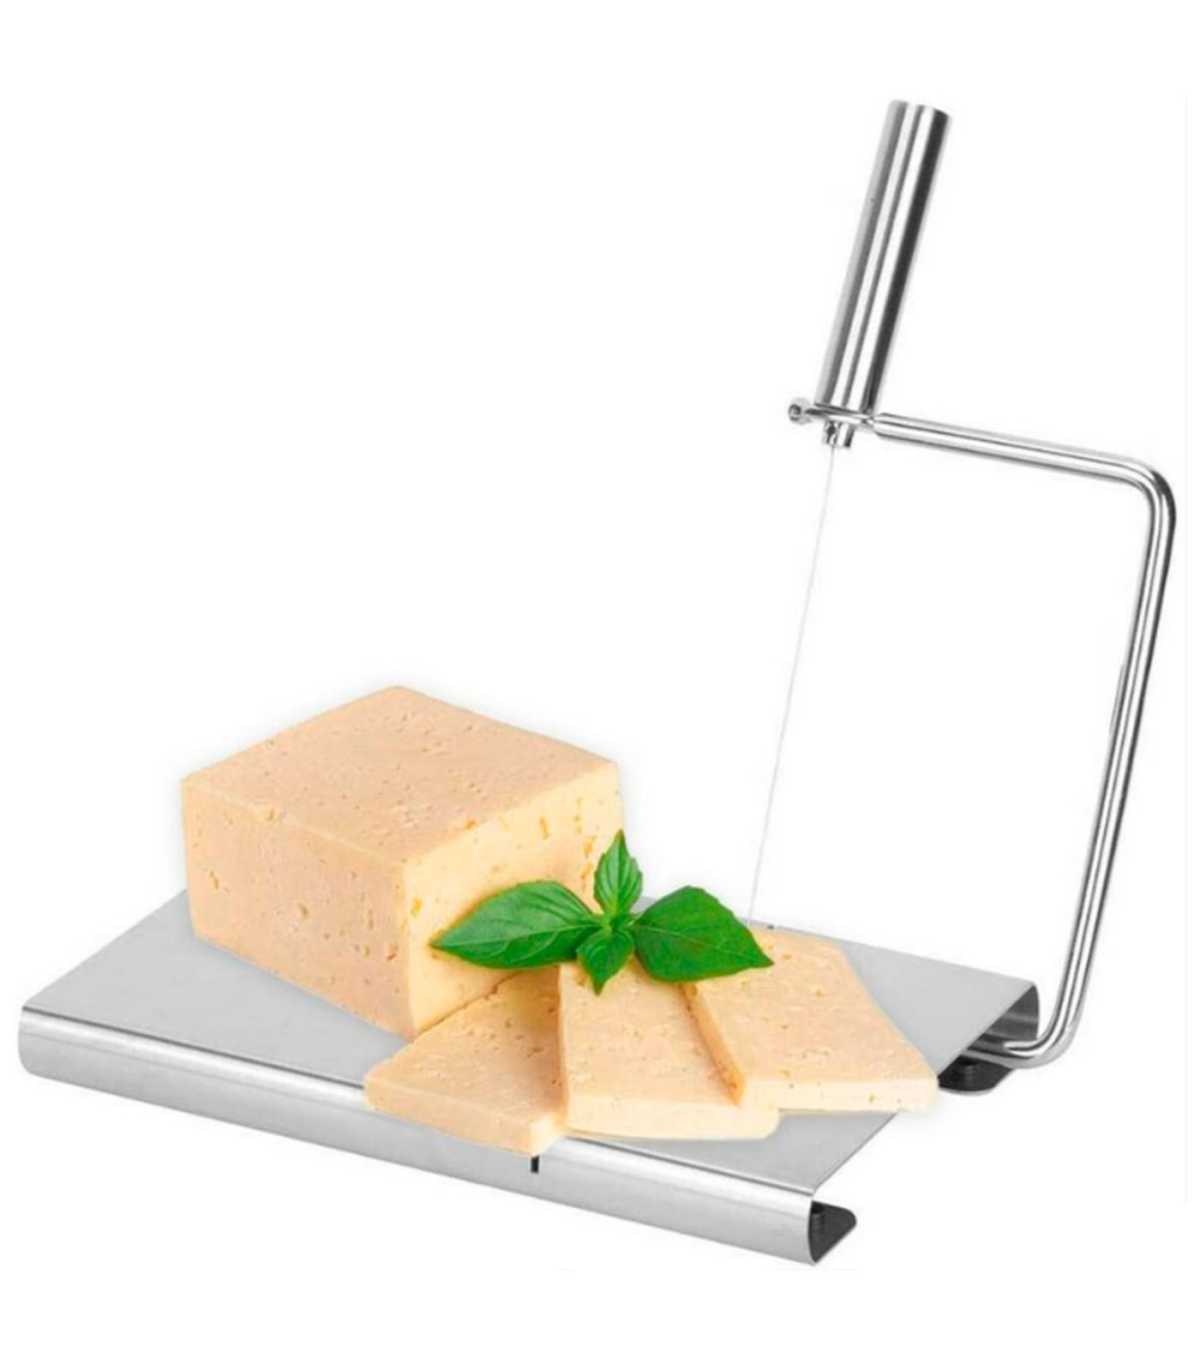 Cortadora profesional de queso manual con lira de corte